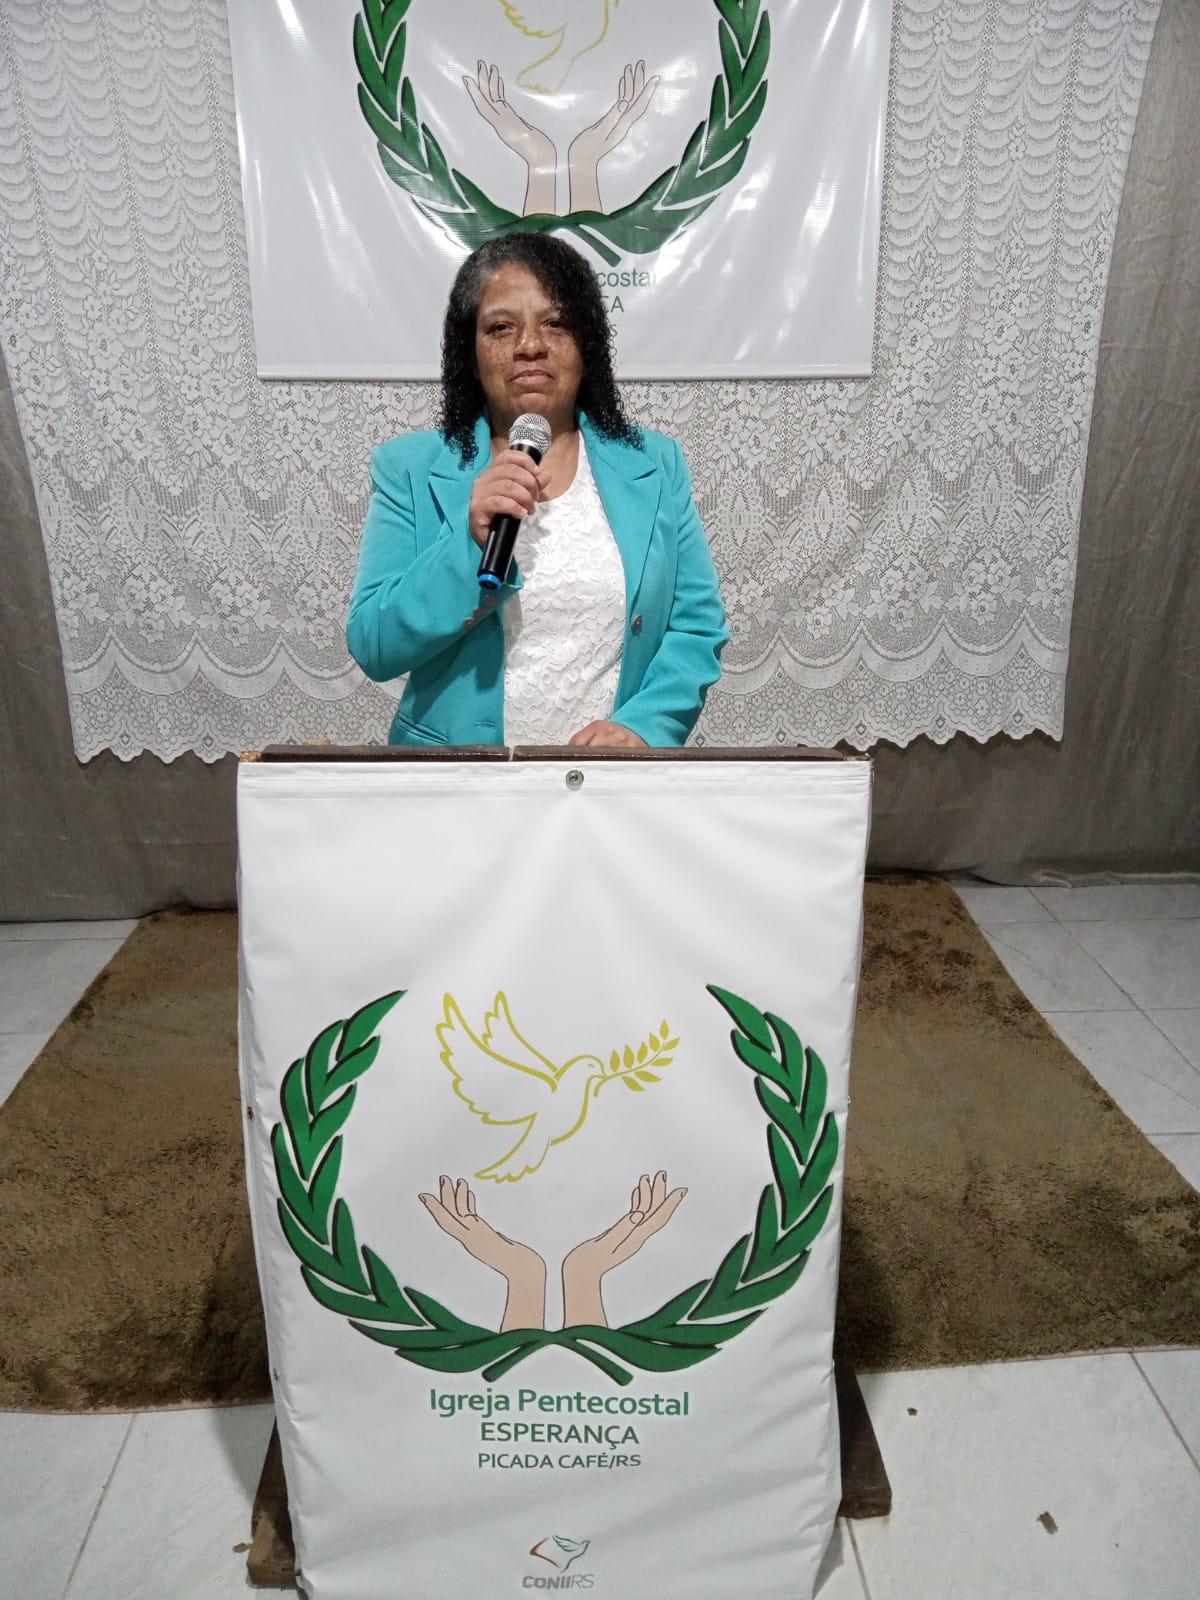 Pastora Mara Eliane da Silva Biana Quevedo